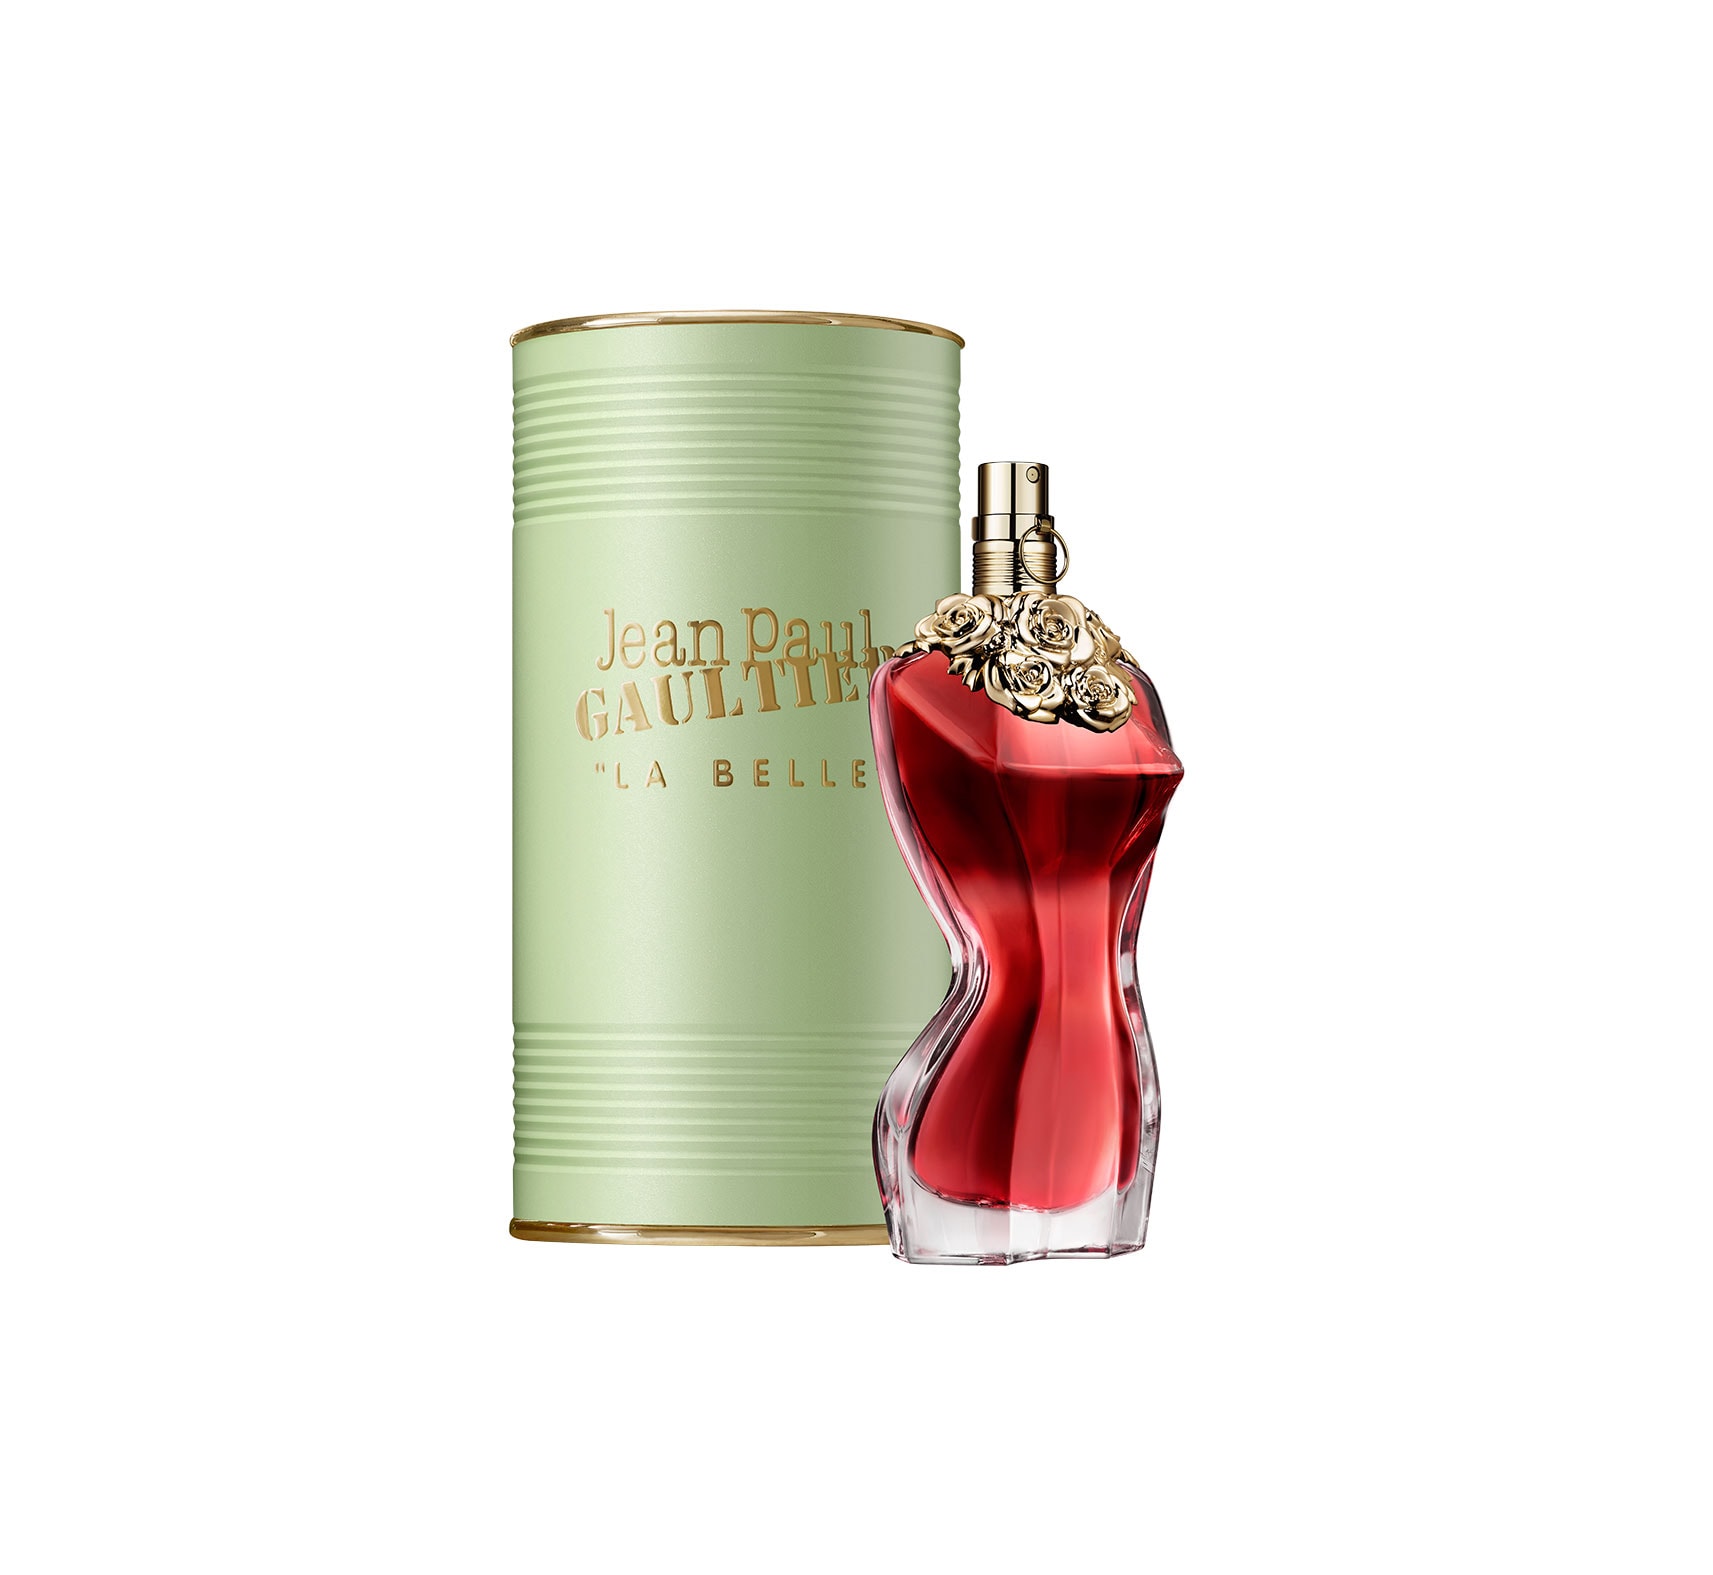 La Belle » Jean Paul Gaultier » The Parfumerie » Sri Lanka